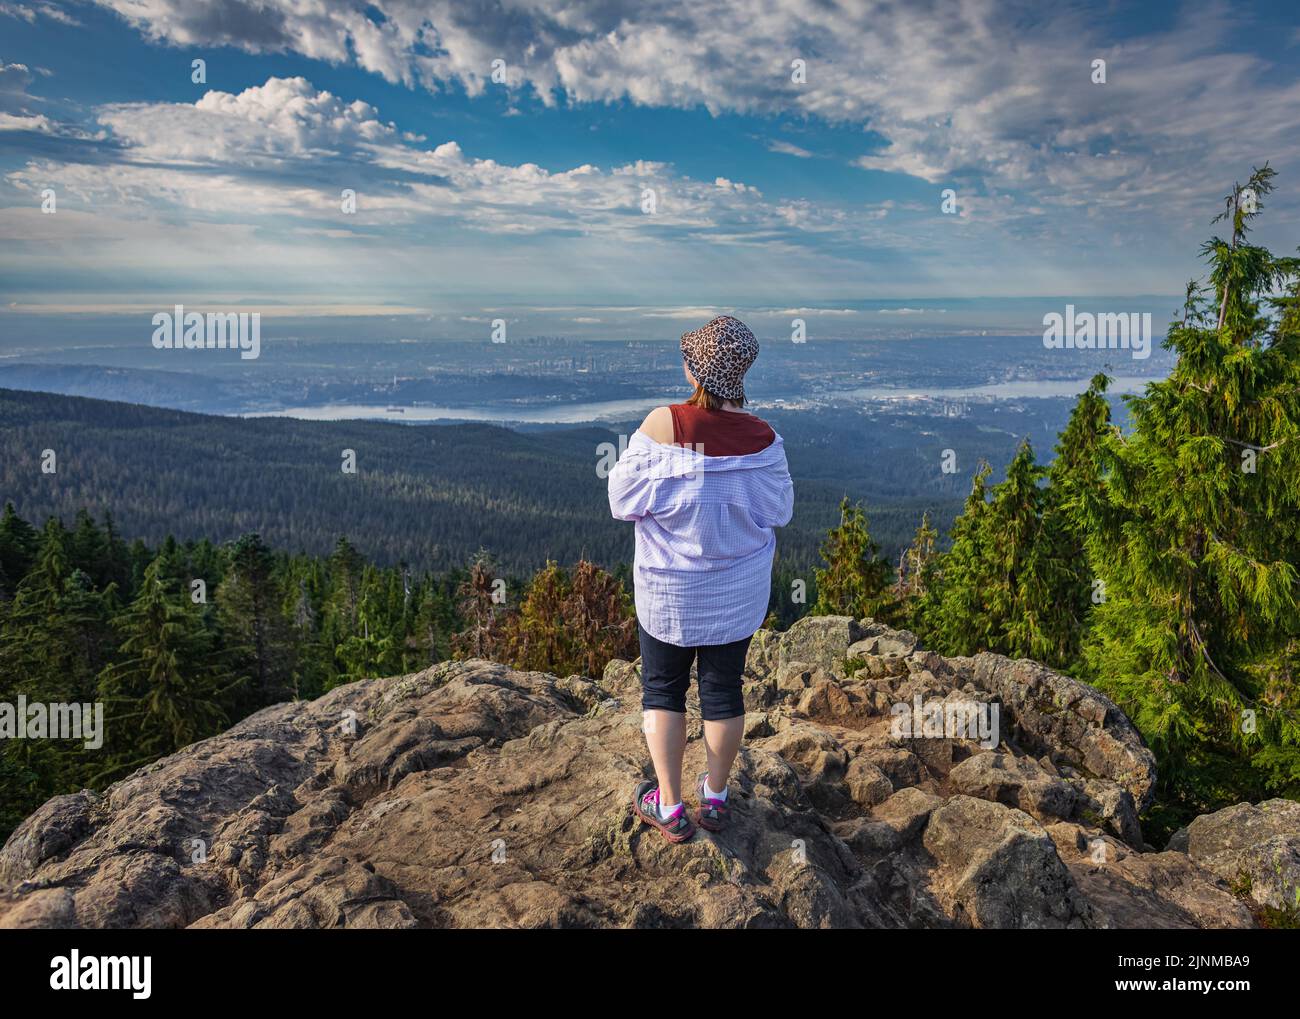 Femme debout au bord de la falaise et jouissant d'une vue sur la vallée, la rivière et les montagnes. Voyager le long du Canada. Espace de copie pour le texte, paysage c Banque D'Images